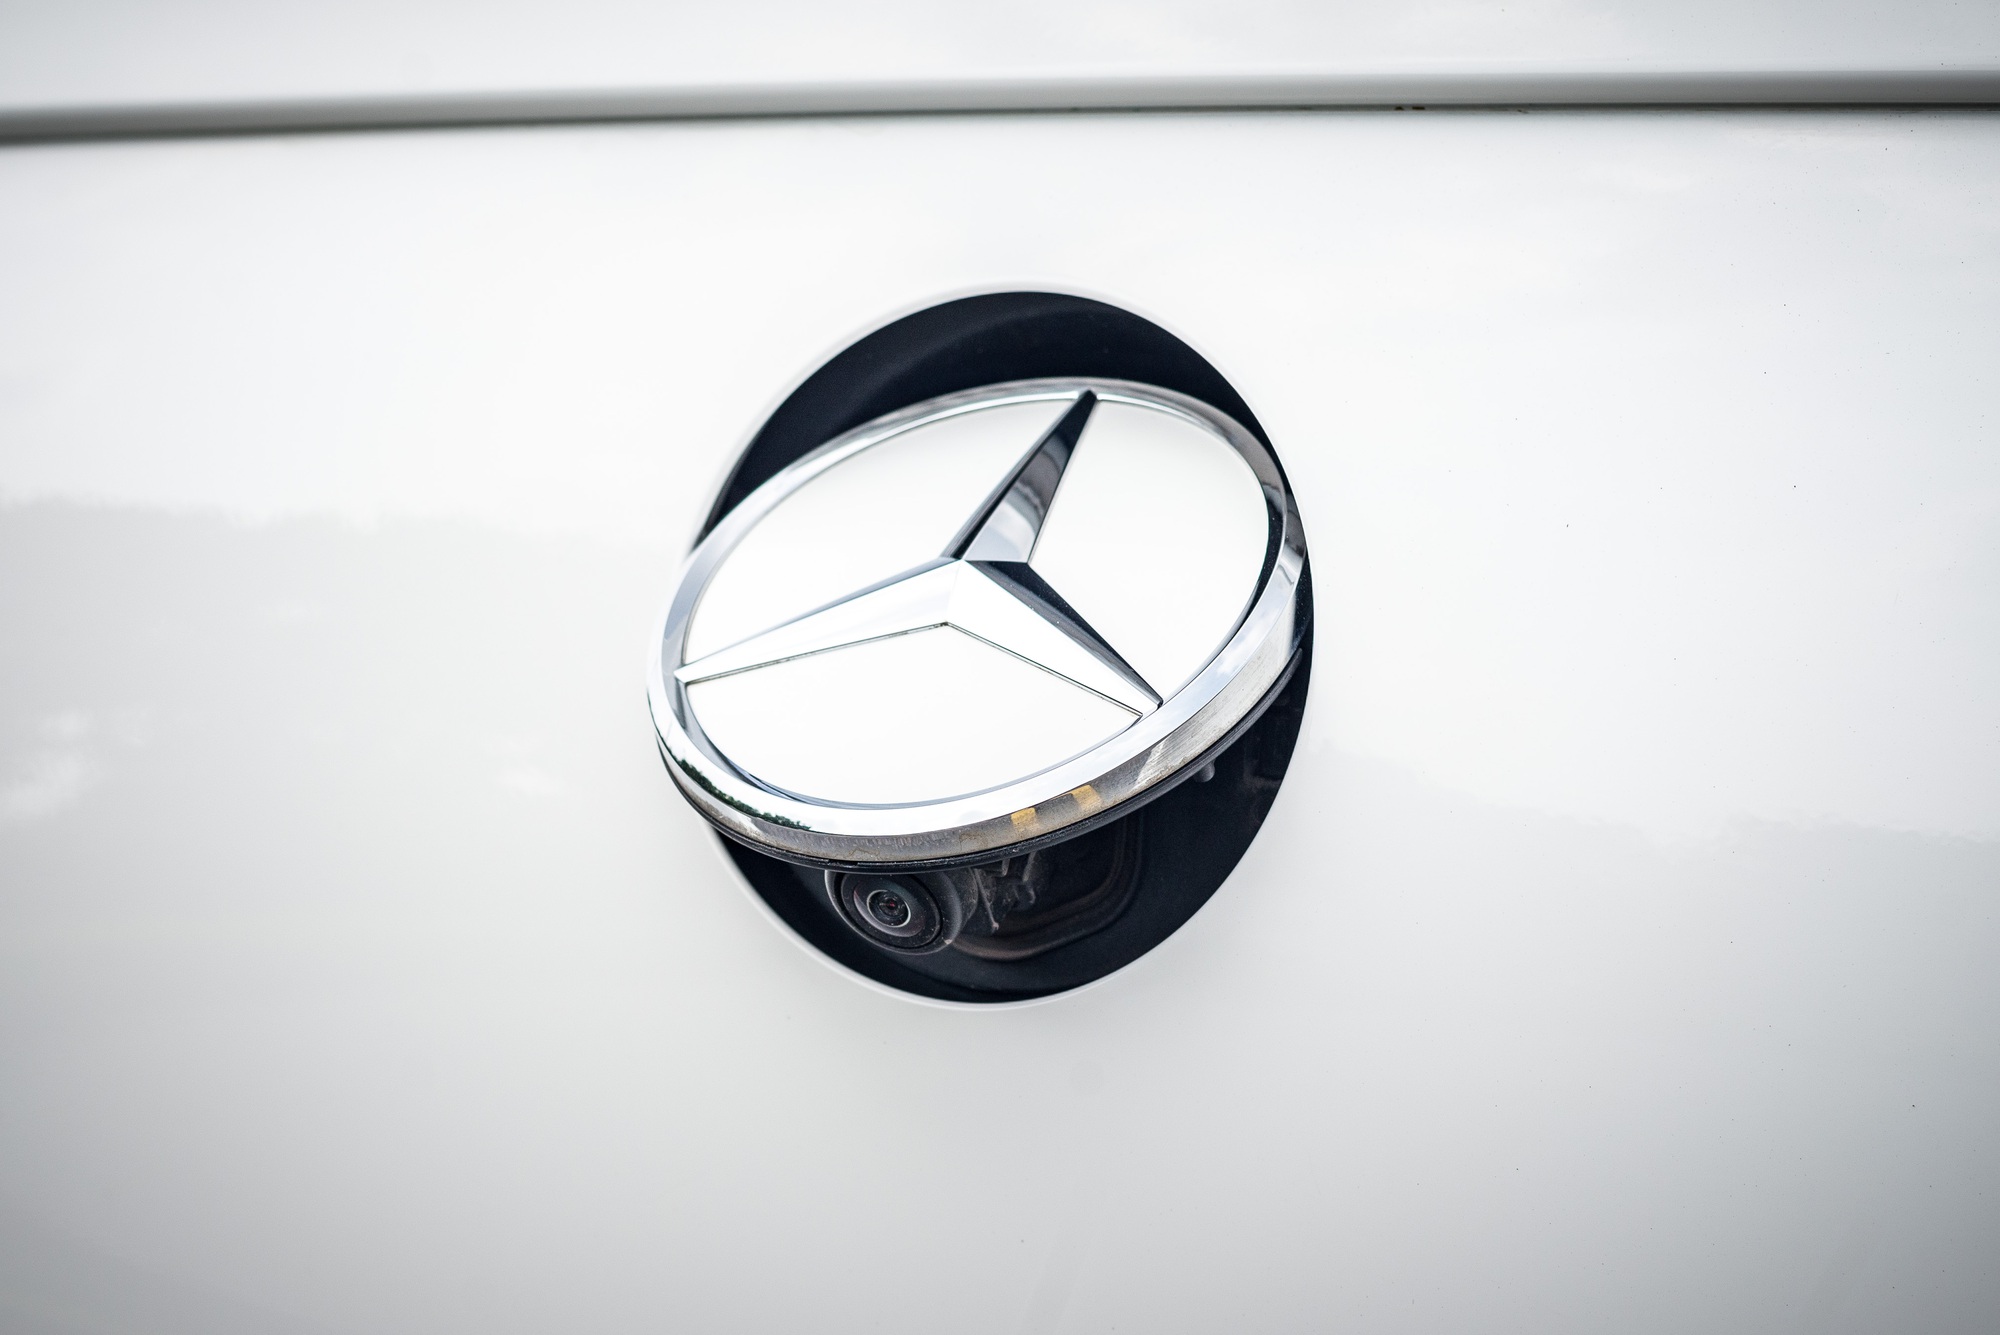 ‘Hàng hiếm’ Mercedes-Benz GLC 300 Coupe 2 năm tuổi được rao bán lại với mức giá gần 2,7 tỷ đồng - Ảnh 8.